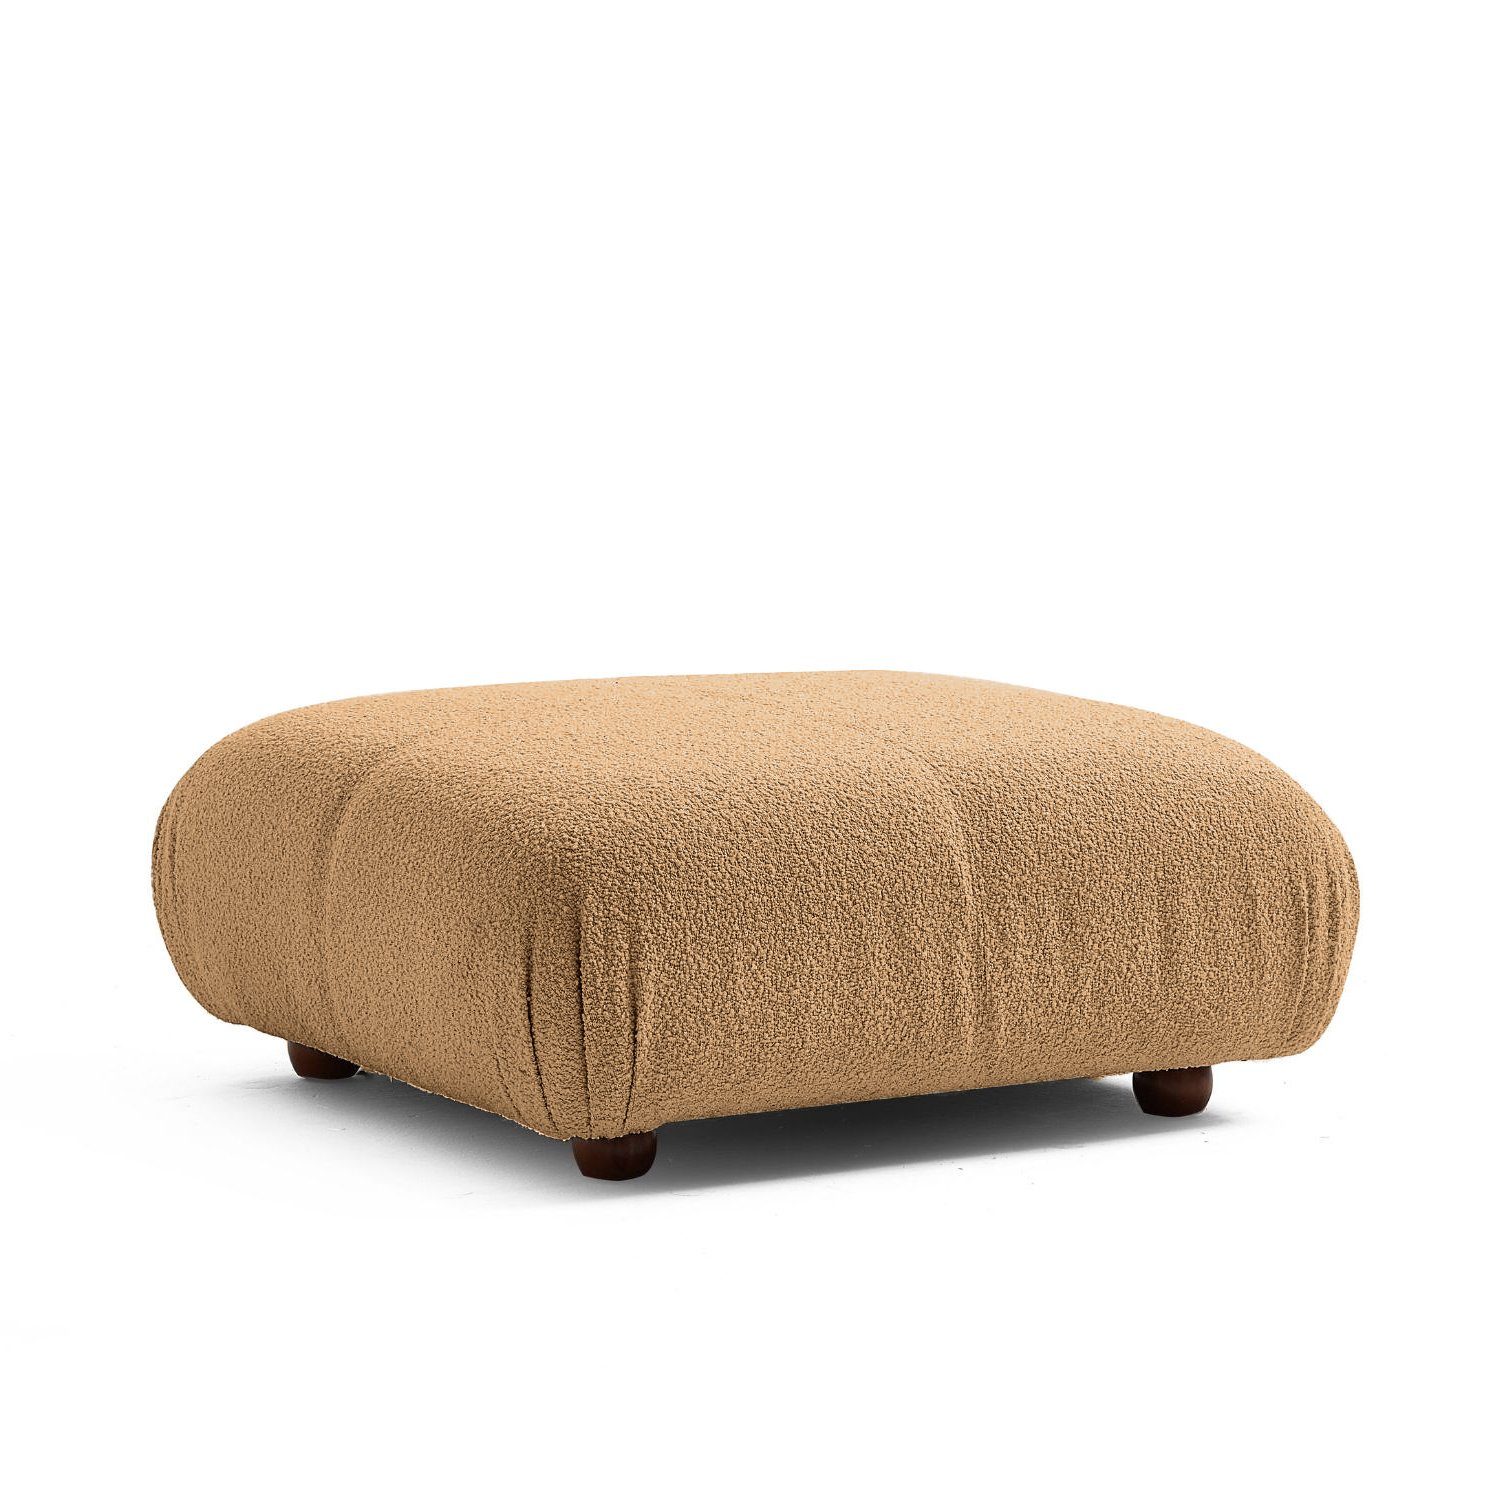 Touch me Sofa Knuffiges Sitzmöbel neueste Generation aus Komfortschaum Braun-Lieferung und Aufbau im Preis enthalten!